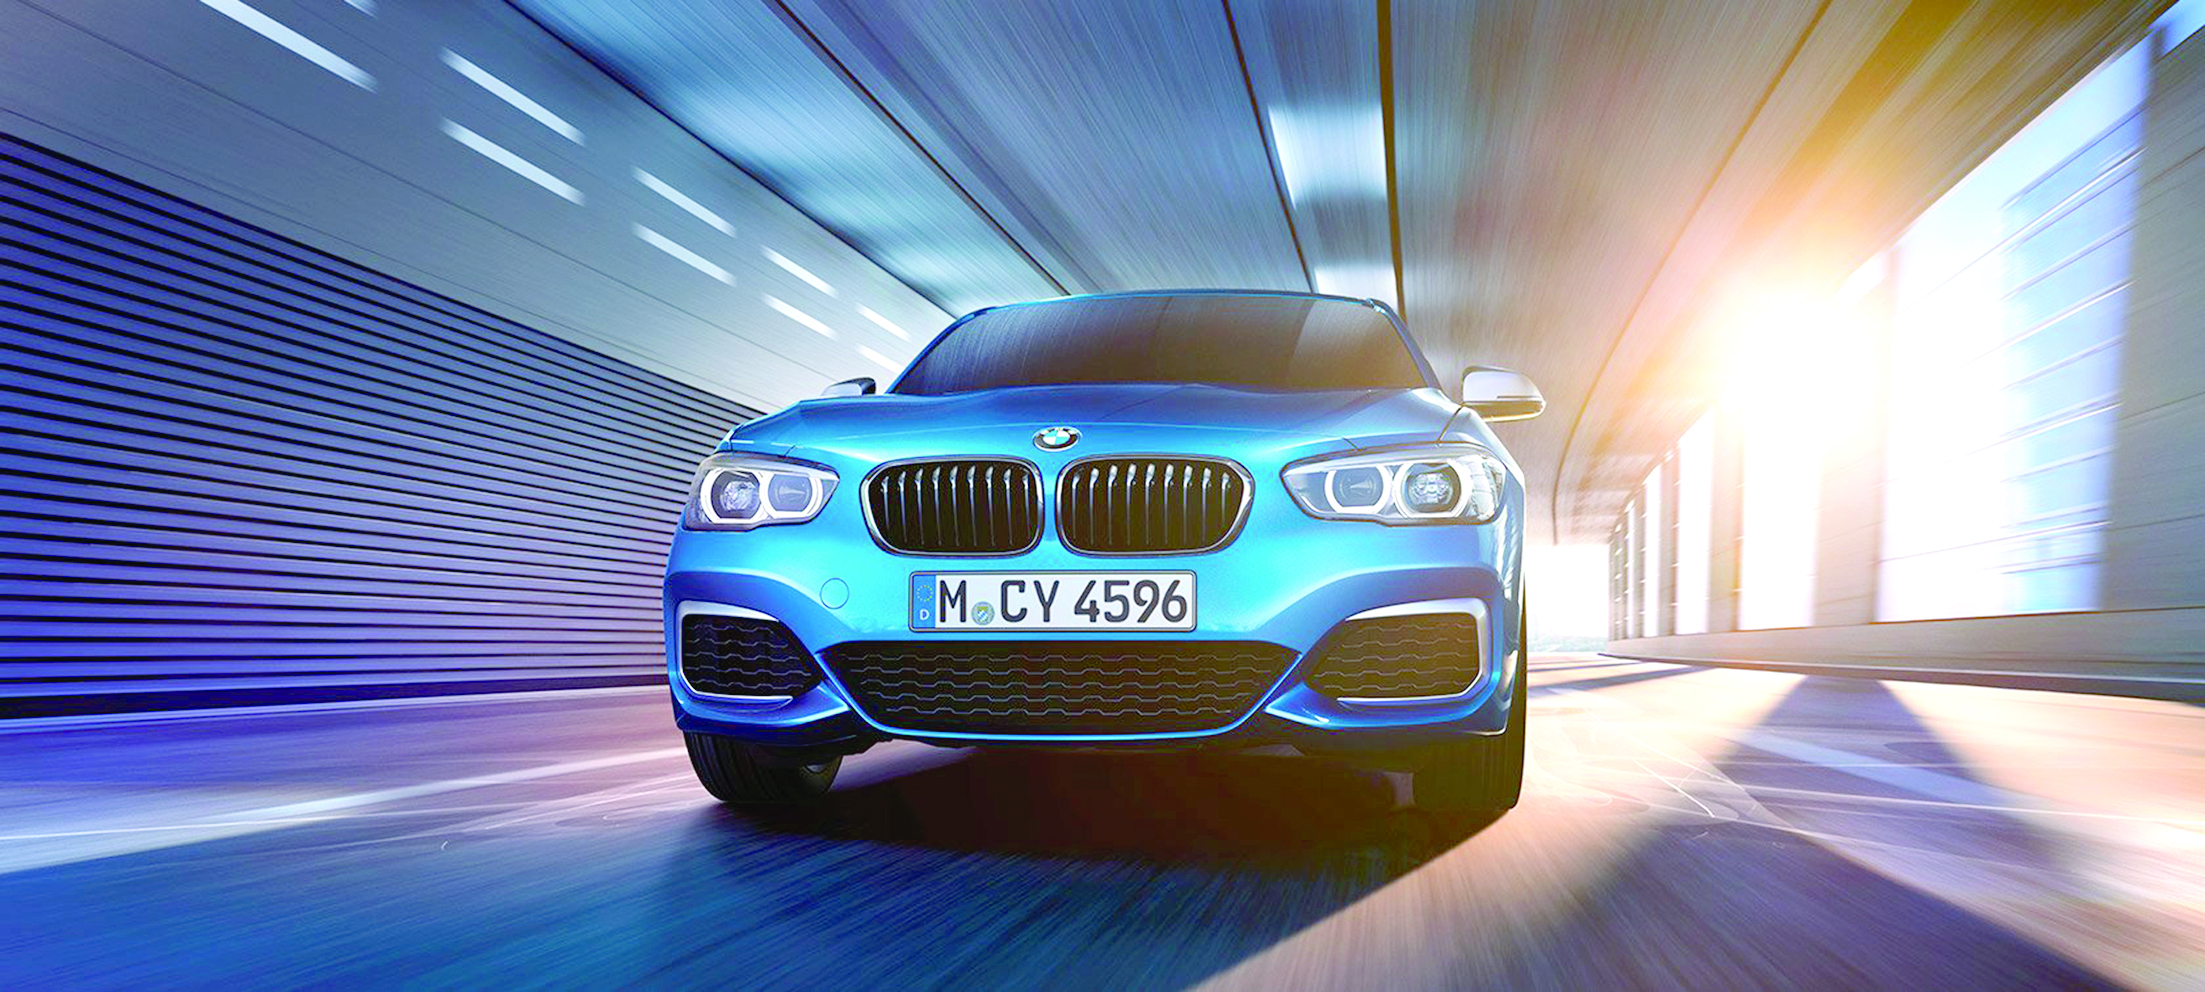 تكنولوجيا BMW تضمن الحد من الانبعاثات خلال القيادة الفعلية